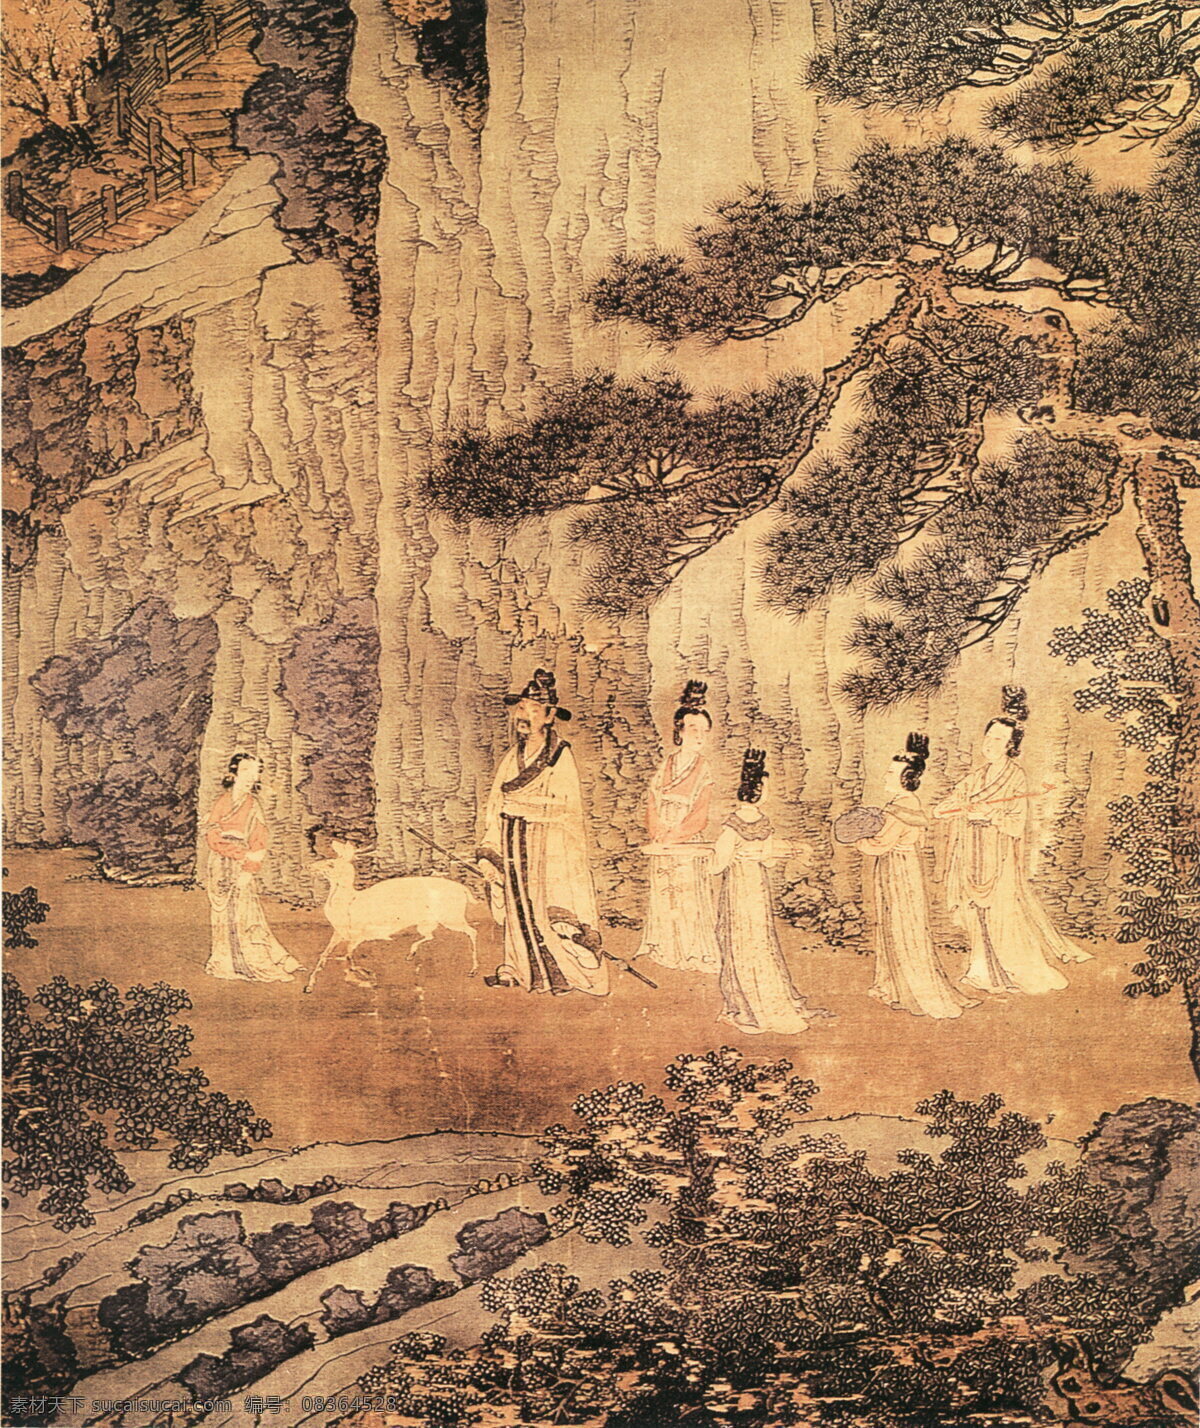 戴 进 谢安 东山 图 人物画 中国 古画 中国古画 设计素材 人物名画 古典藏画 书画美术 棕色